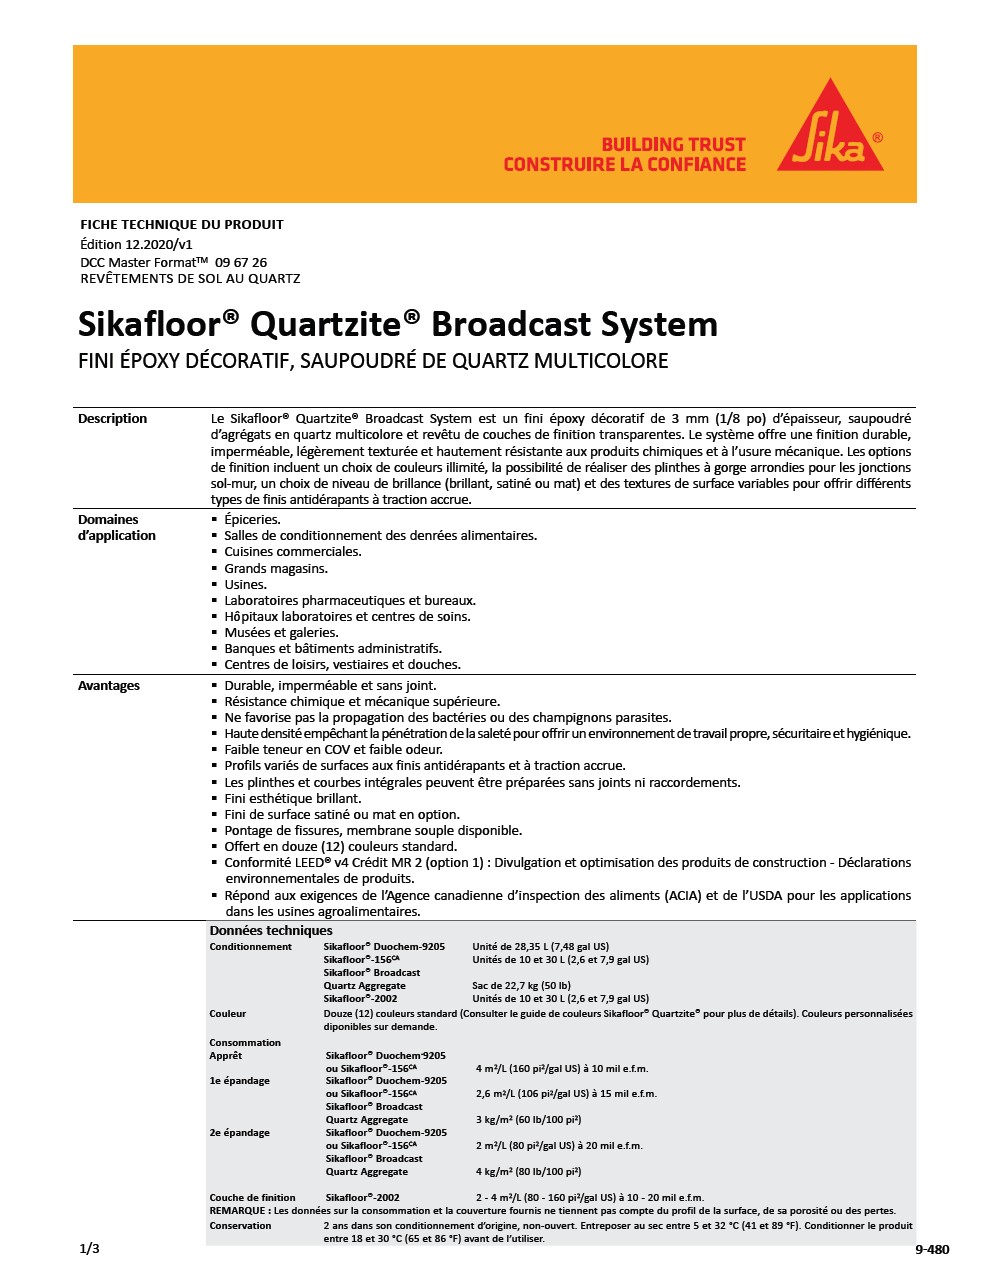 Sikafloor®-Quartzite®-Broadcast System